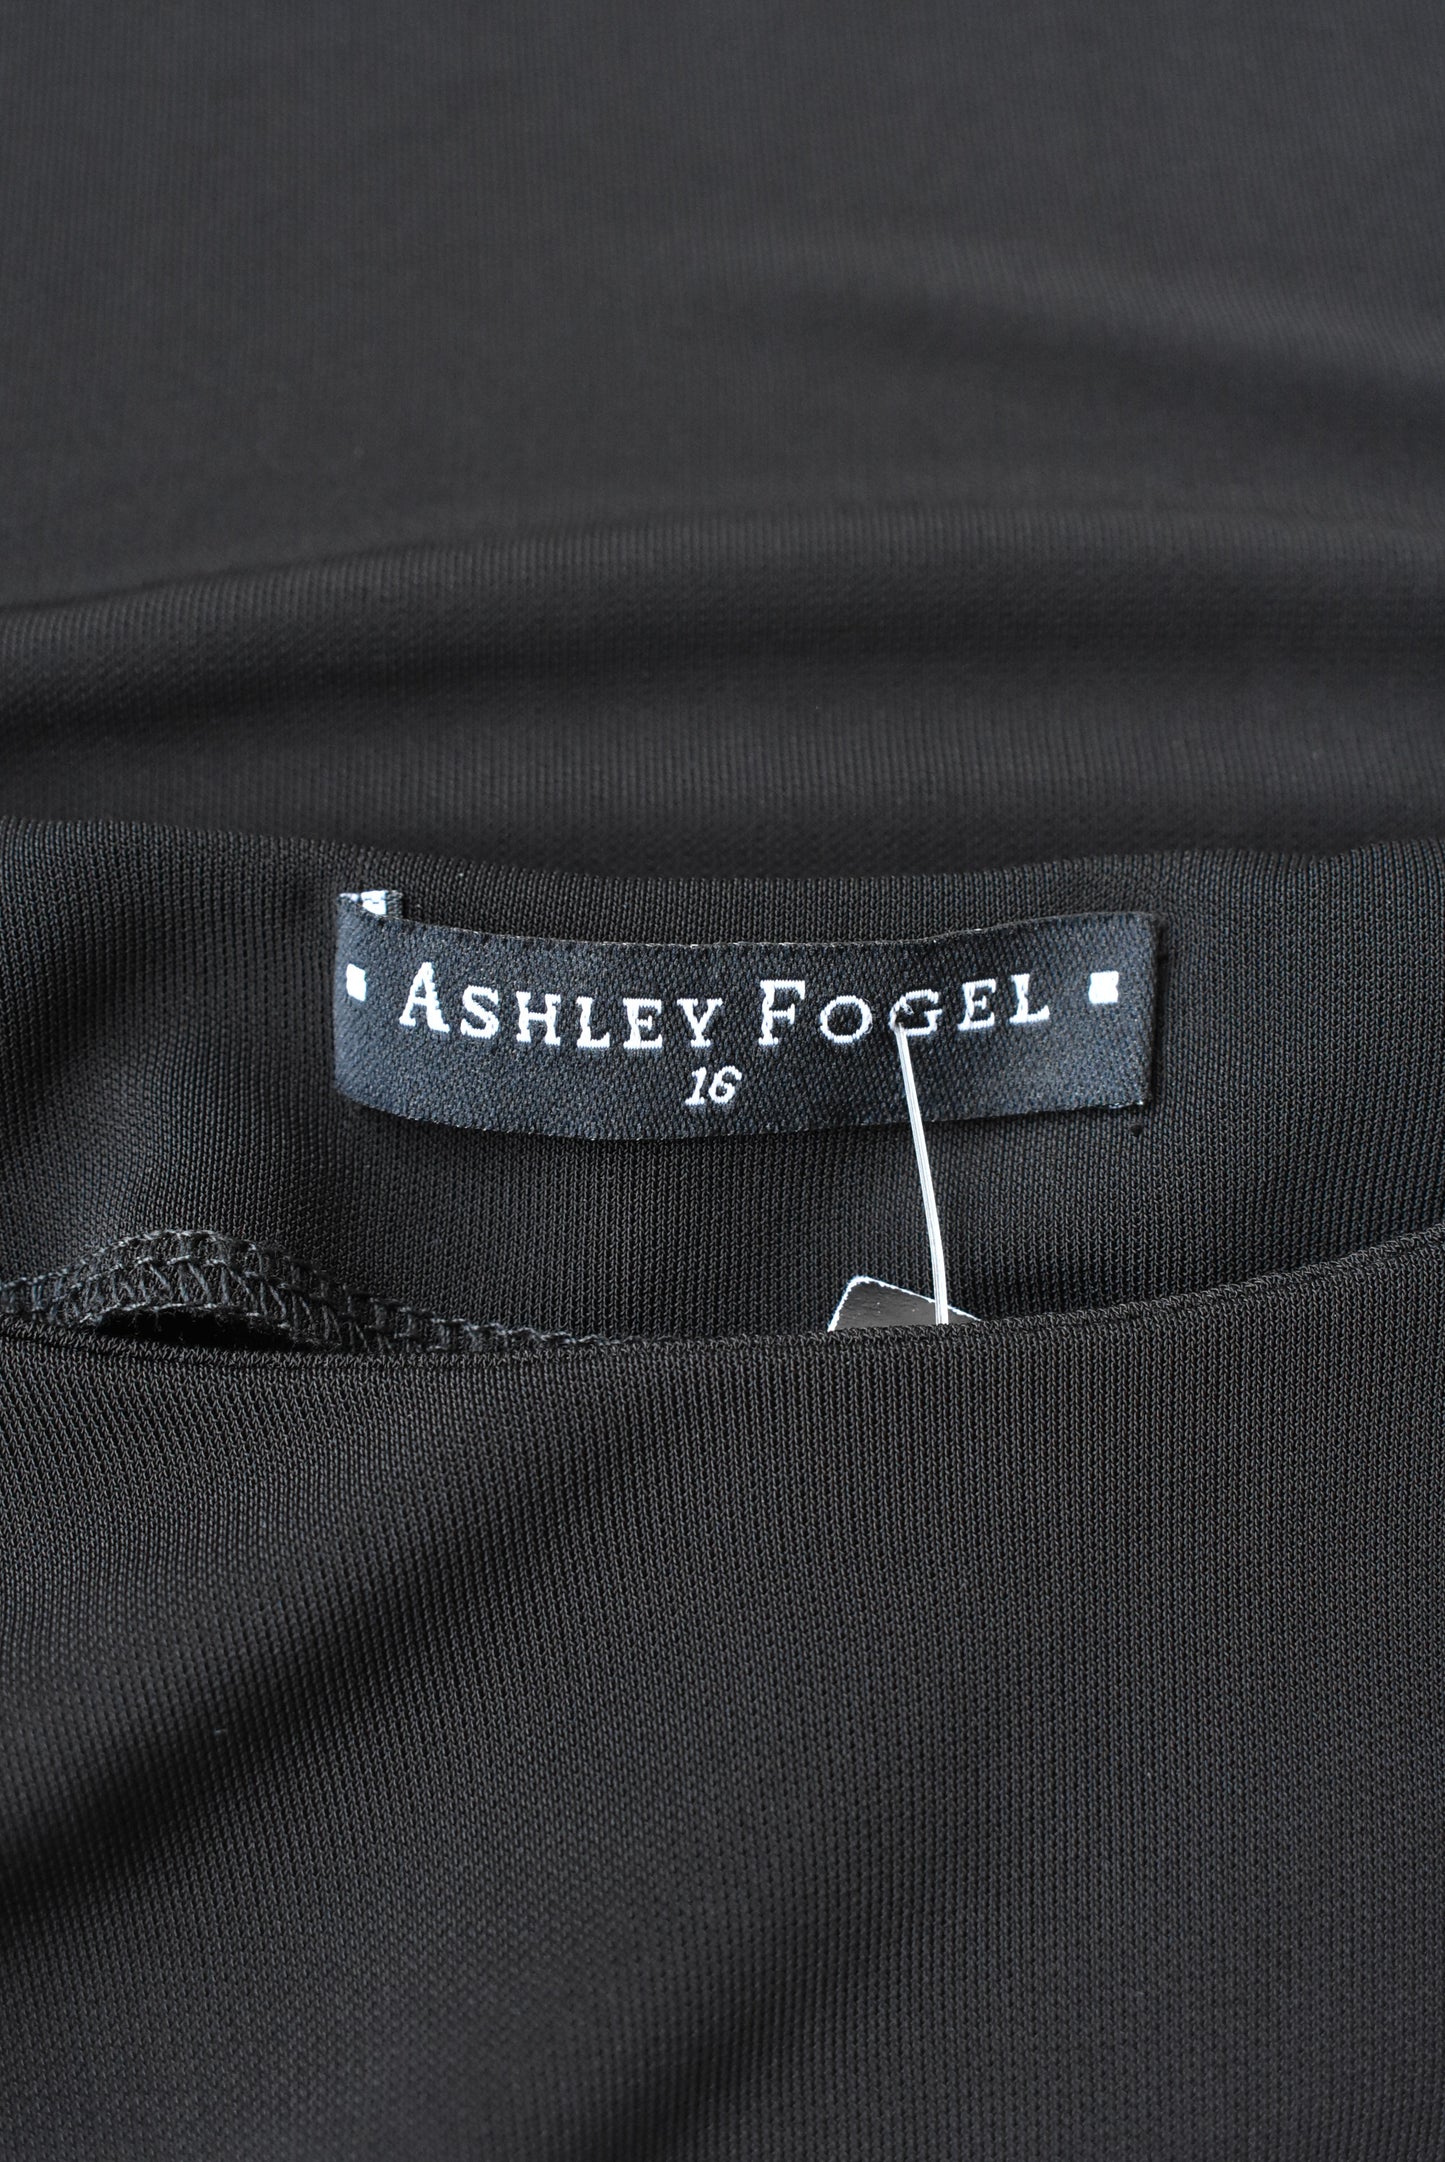 Ashley Fogel black studded strap top, size 16